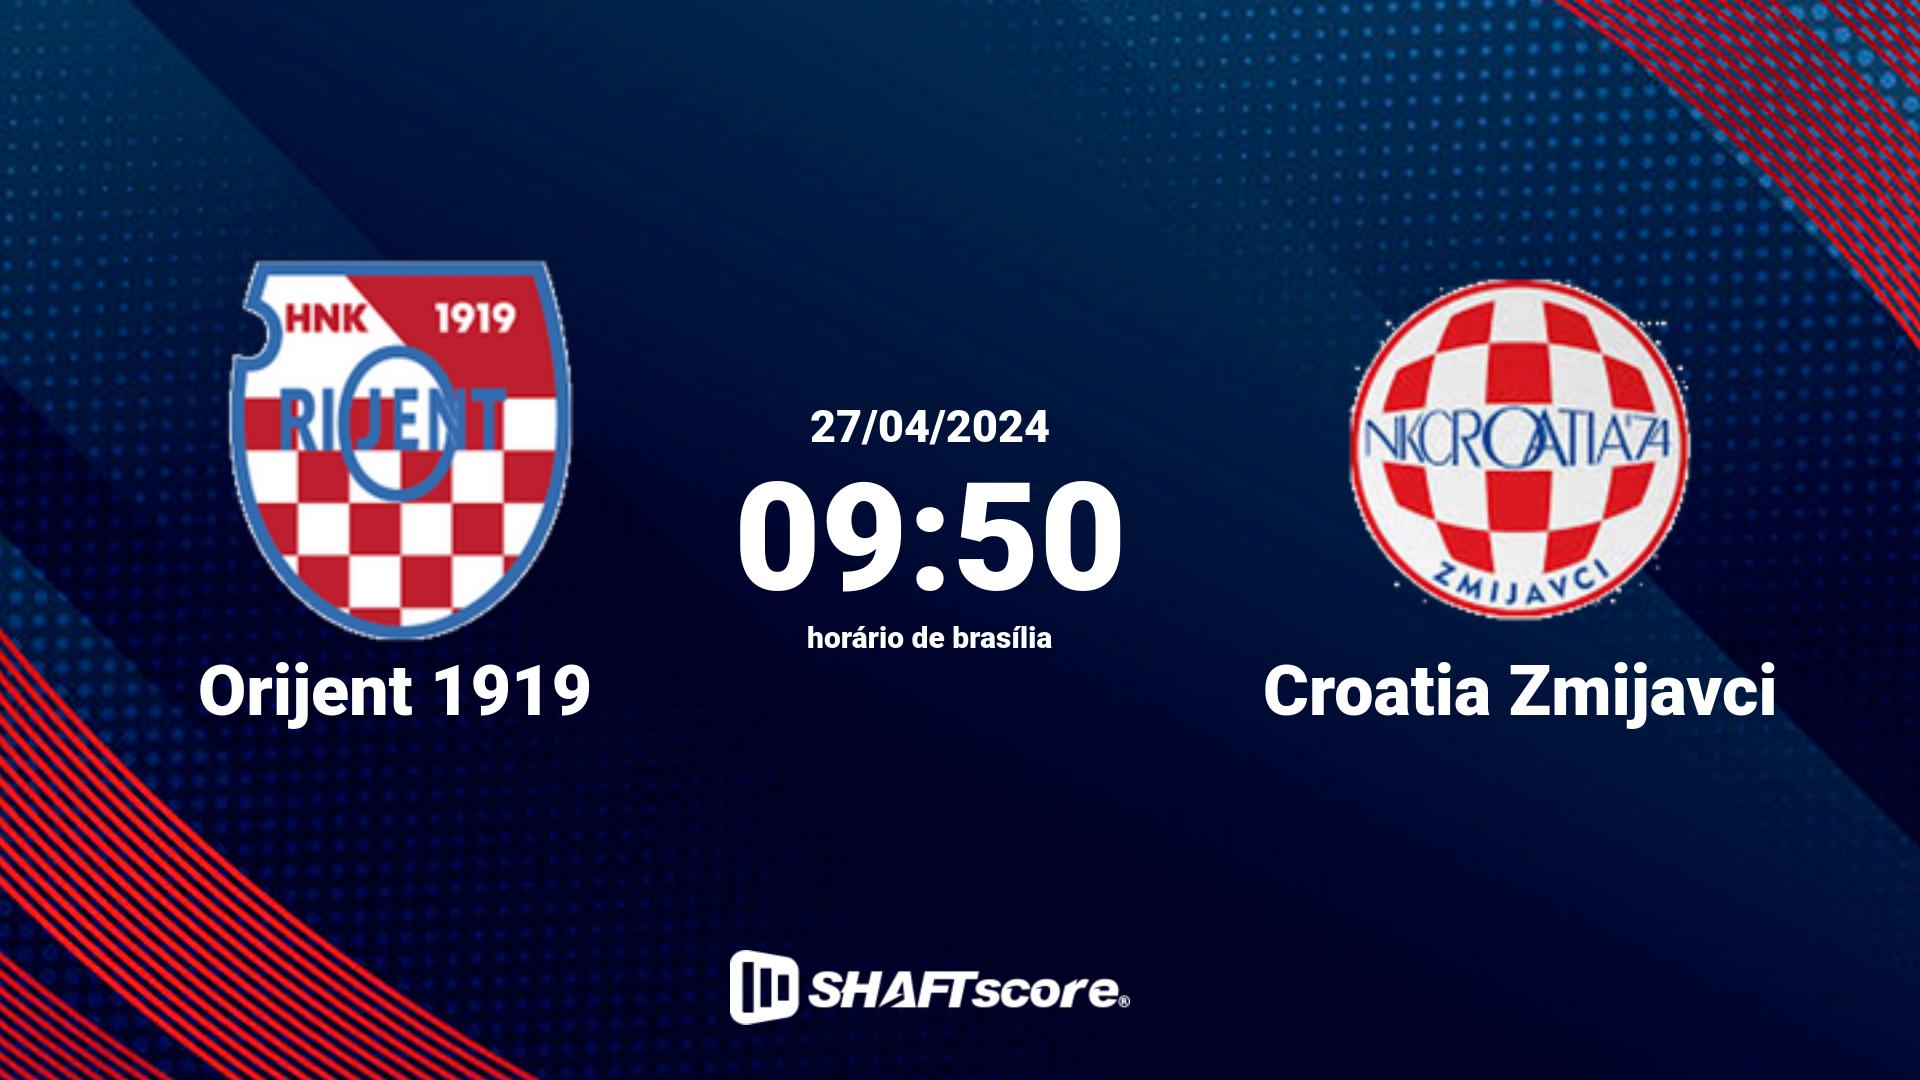 Estatísticas do jogo Orijent 1919 vs Croatia Zmijavci 27.04 09:50